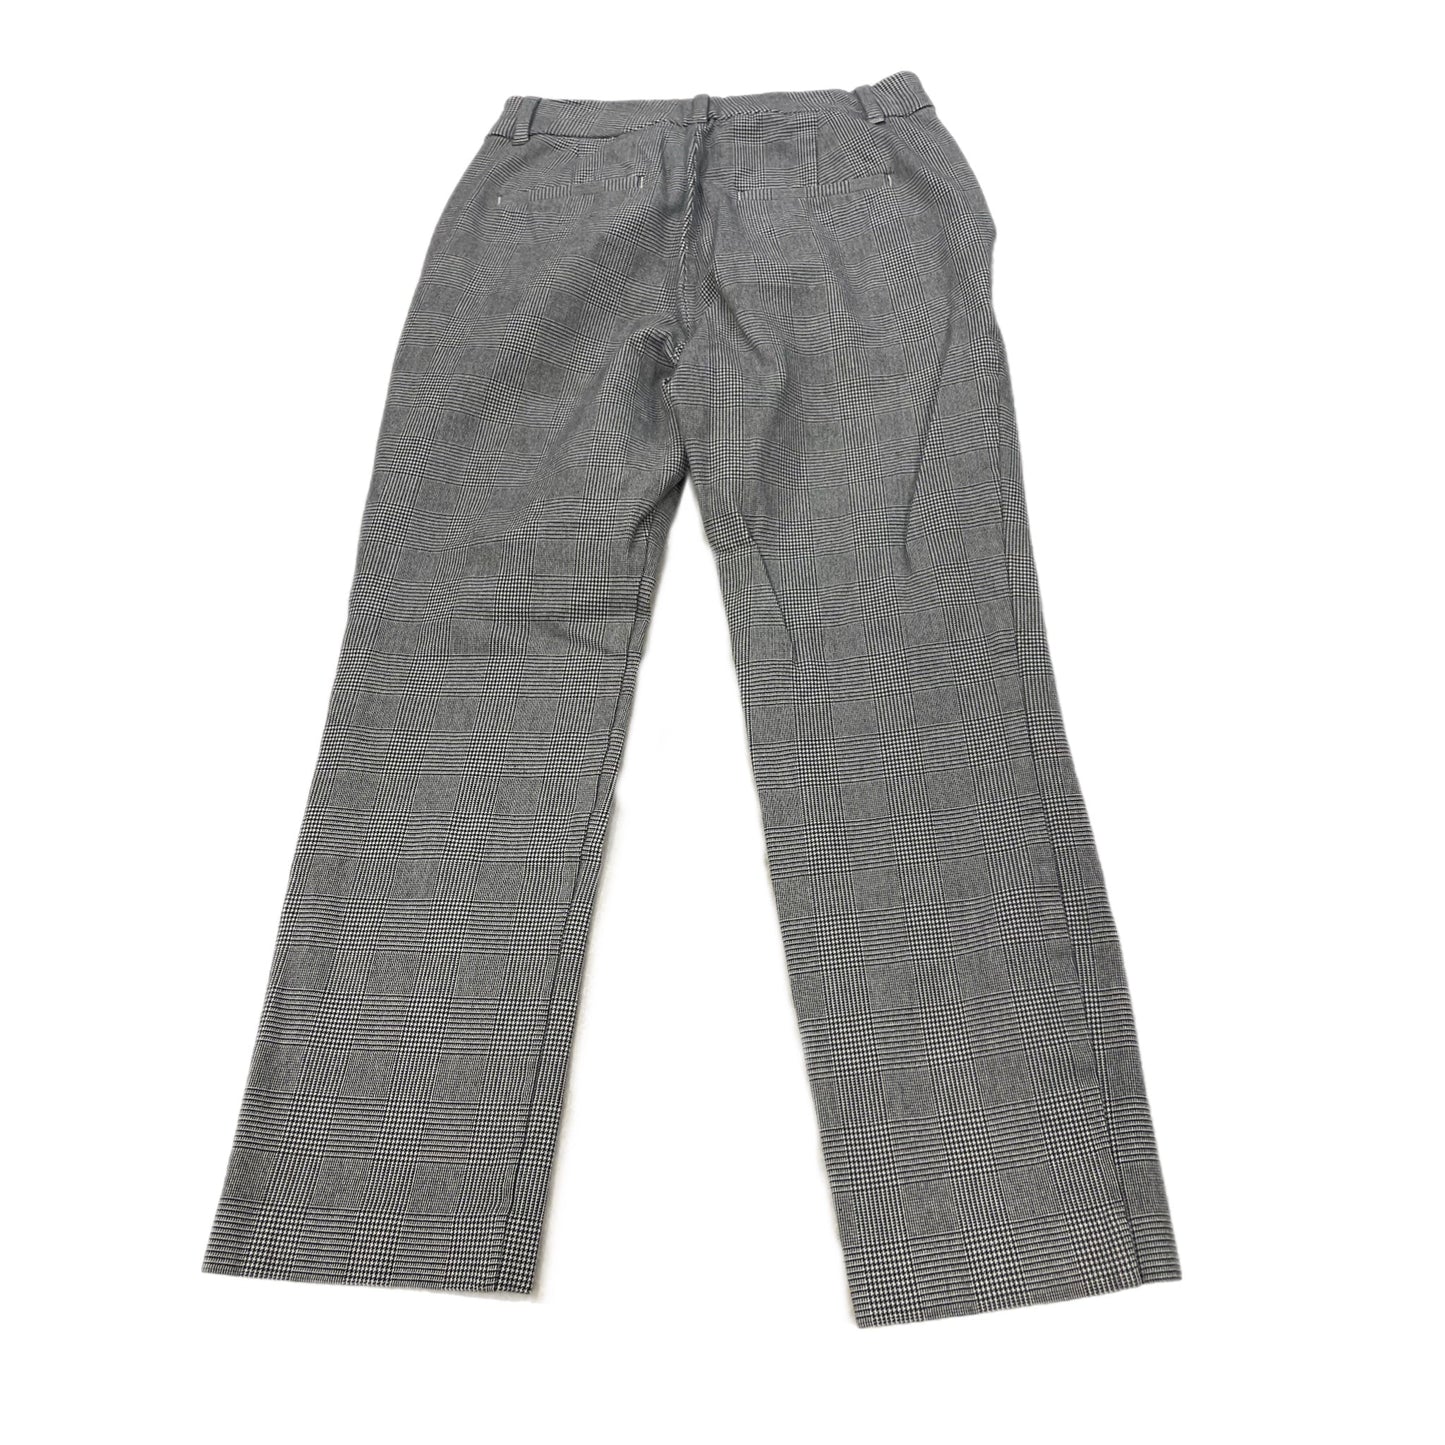 Pants Work/dress By Gap  Size: 4